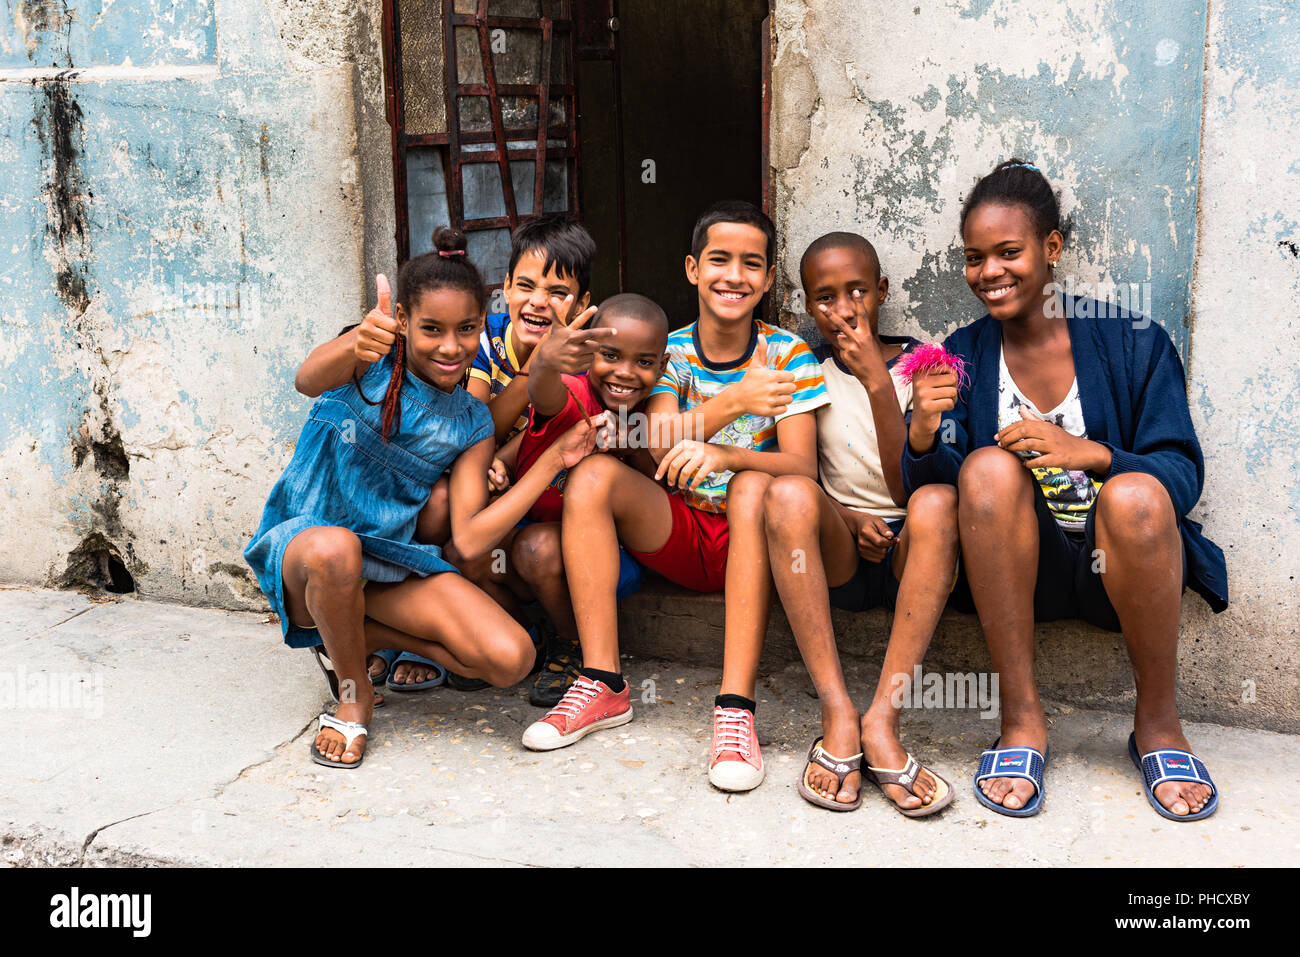 Diversi gruppi di bambini in attesa presidente Obama la storica visita a Cuba sono entusiasti e felici di vedere gli americani a l'Avana Vecchia. Foto Stock